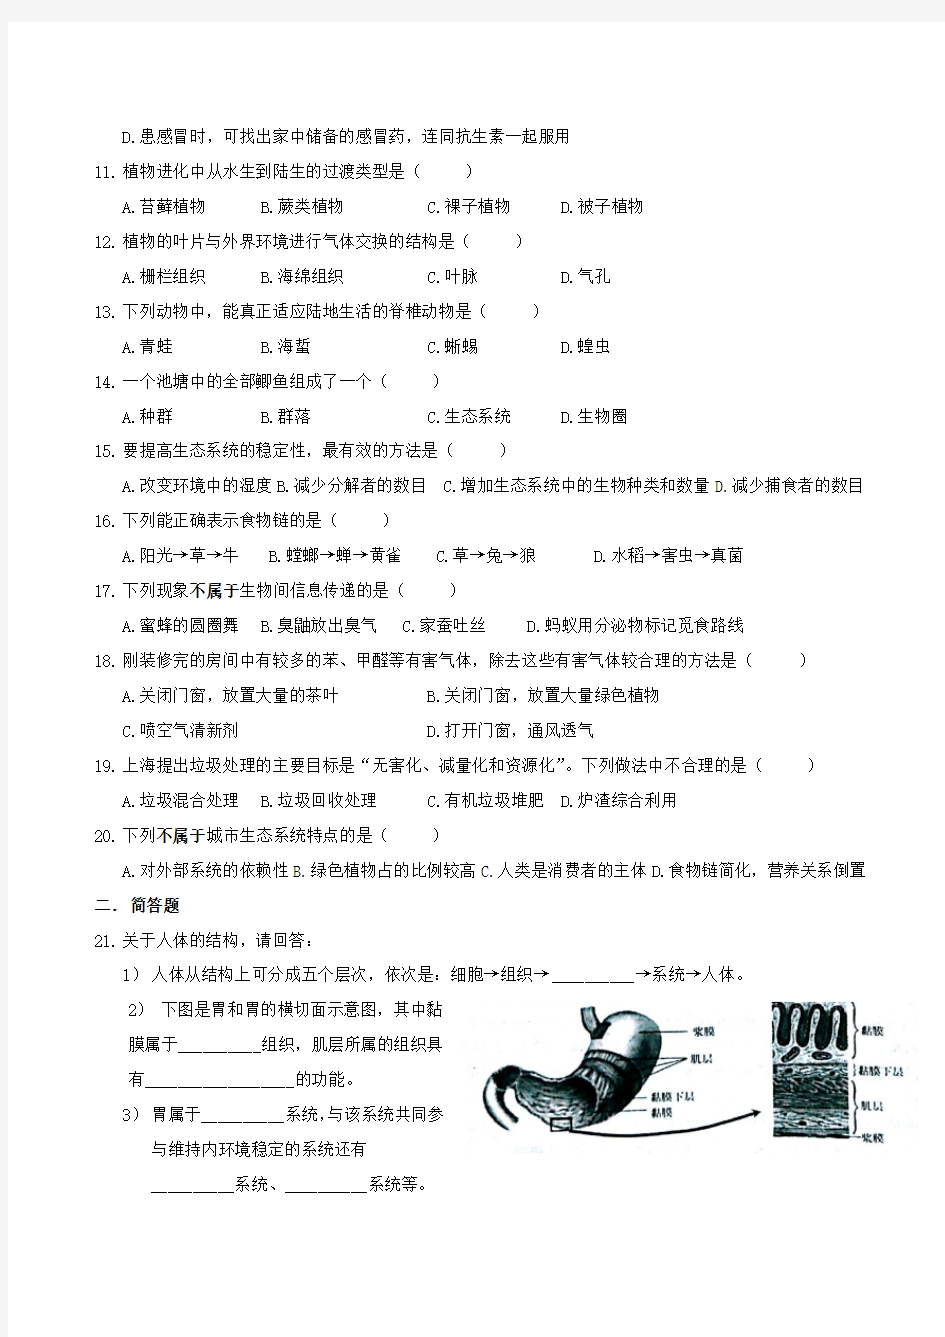 2015年上海市初中学生学业考试生命科学试卷